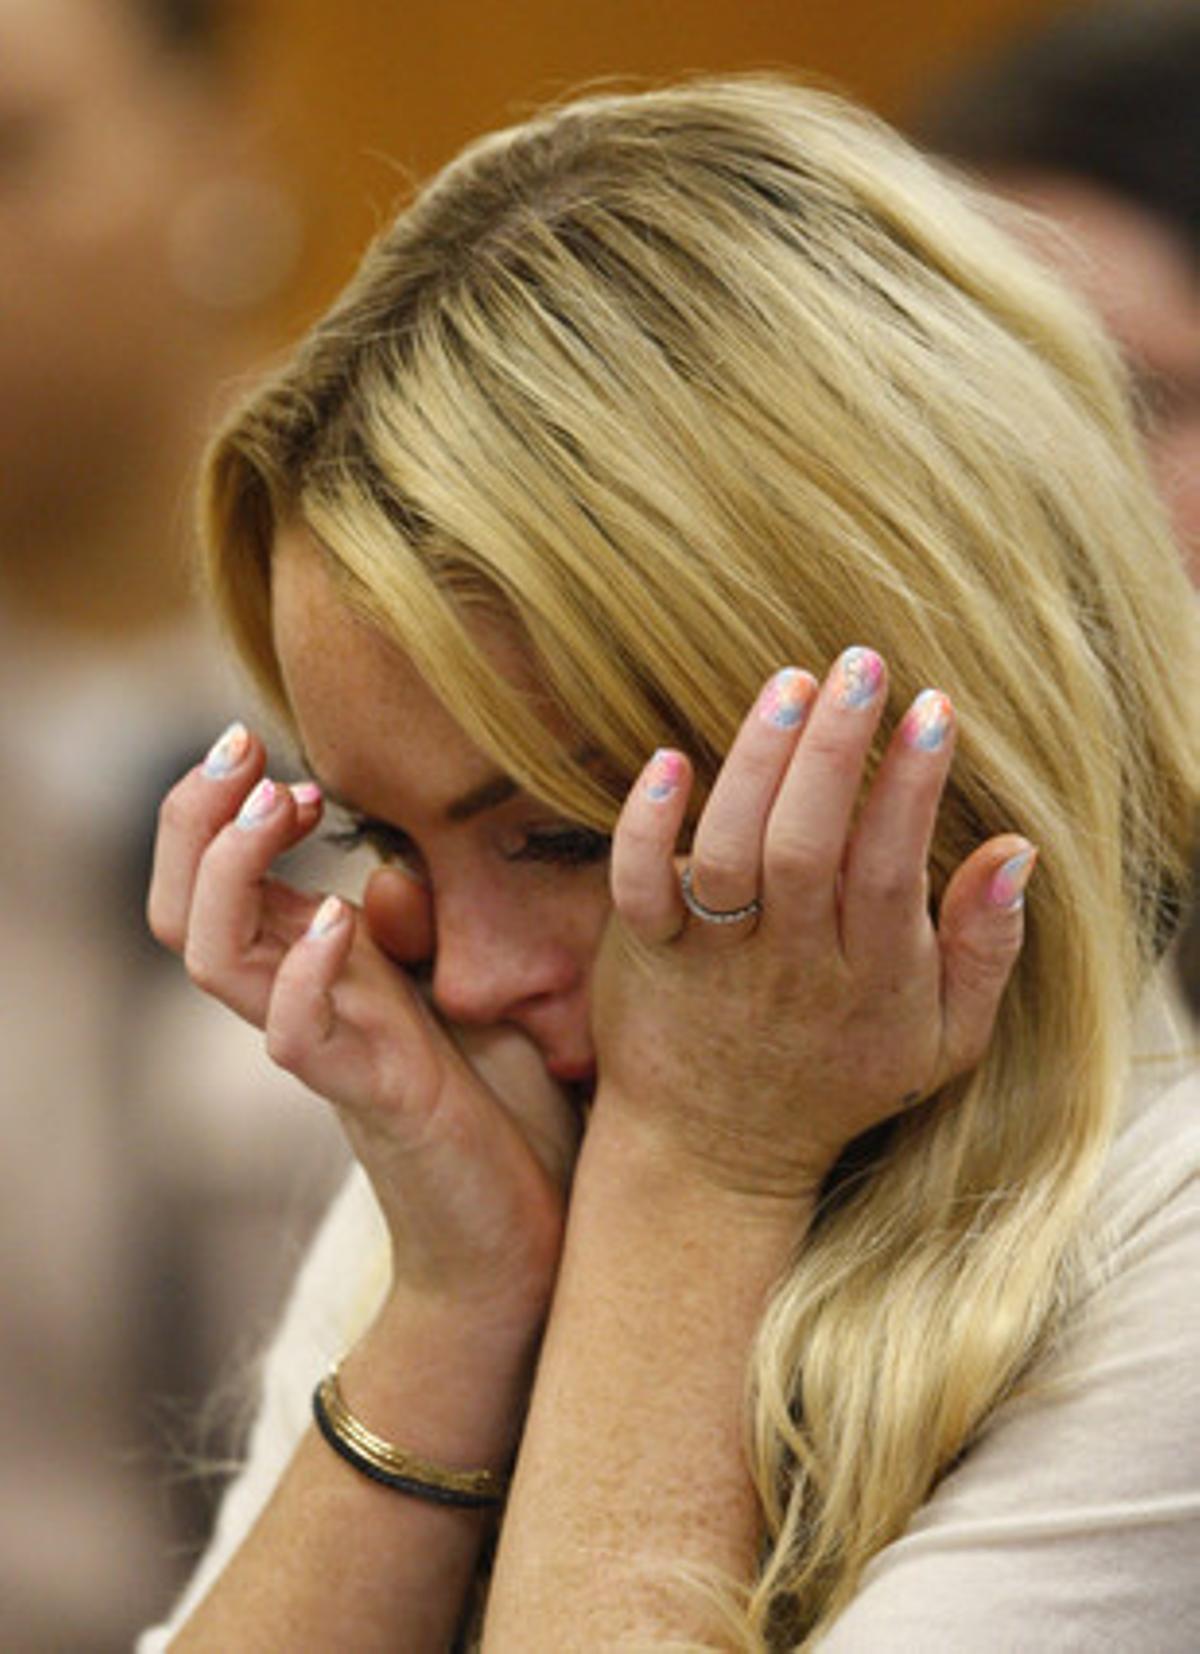 La actriz estadounidense rompe a llorar tras conocer la sentencia que la condena por violar su libertad condicional.